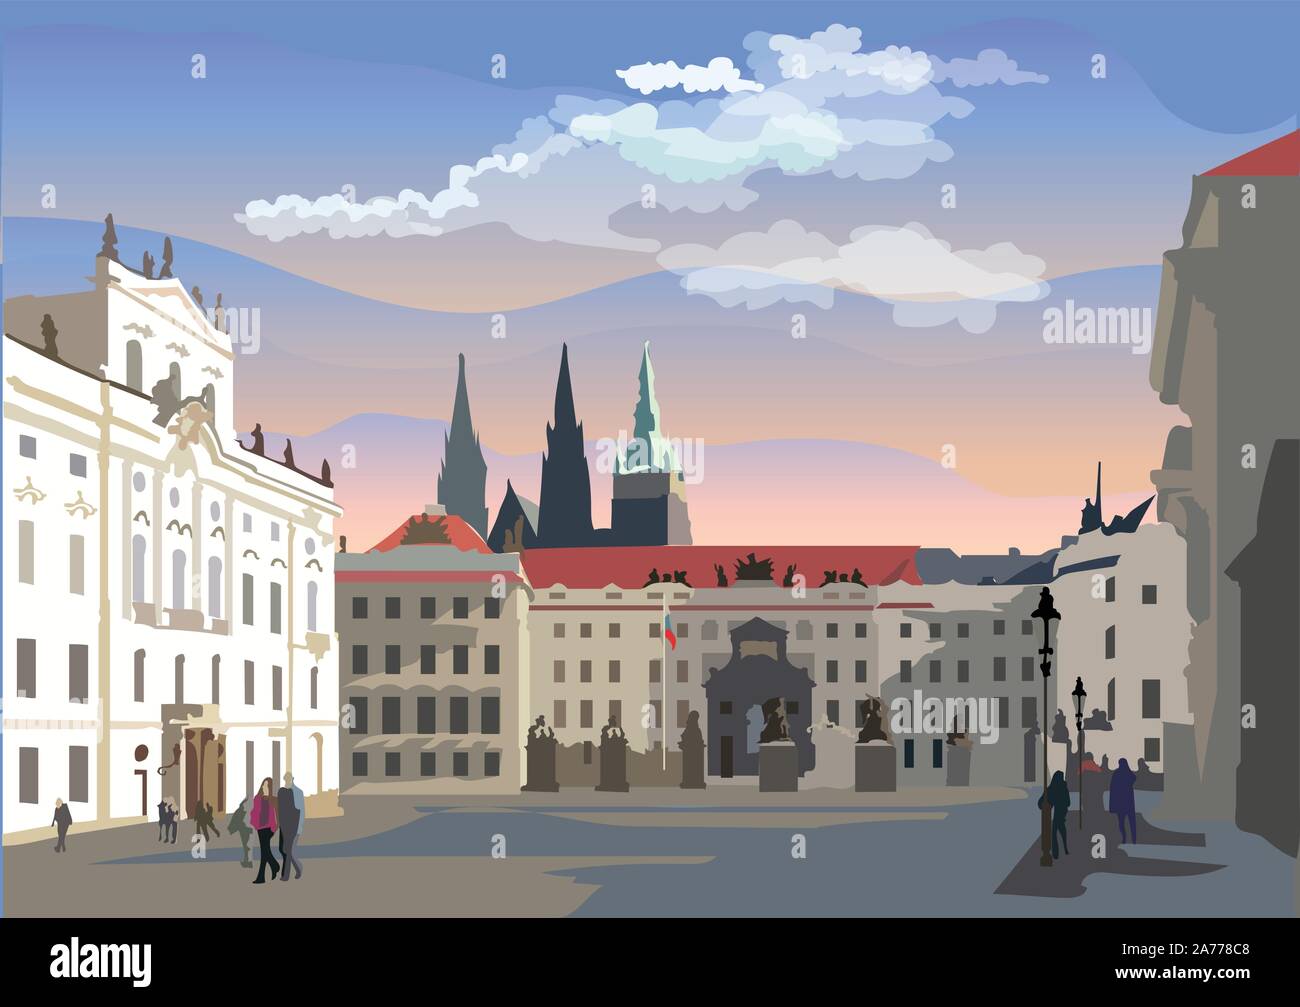 Colorata illustrazione vettoriale di Hradcany piazza. La gate centrale del castello di Hradcany. Di Praga, Repubblica Ceca. Vettore Illustra colorati Illustrazione Vettoriale